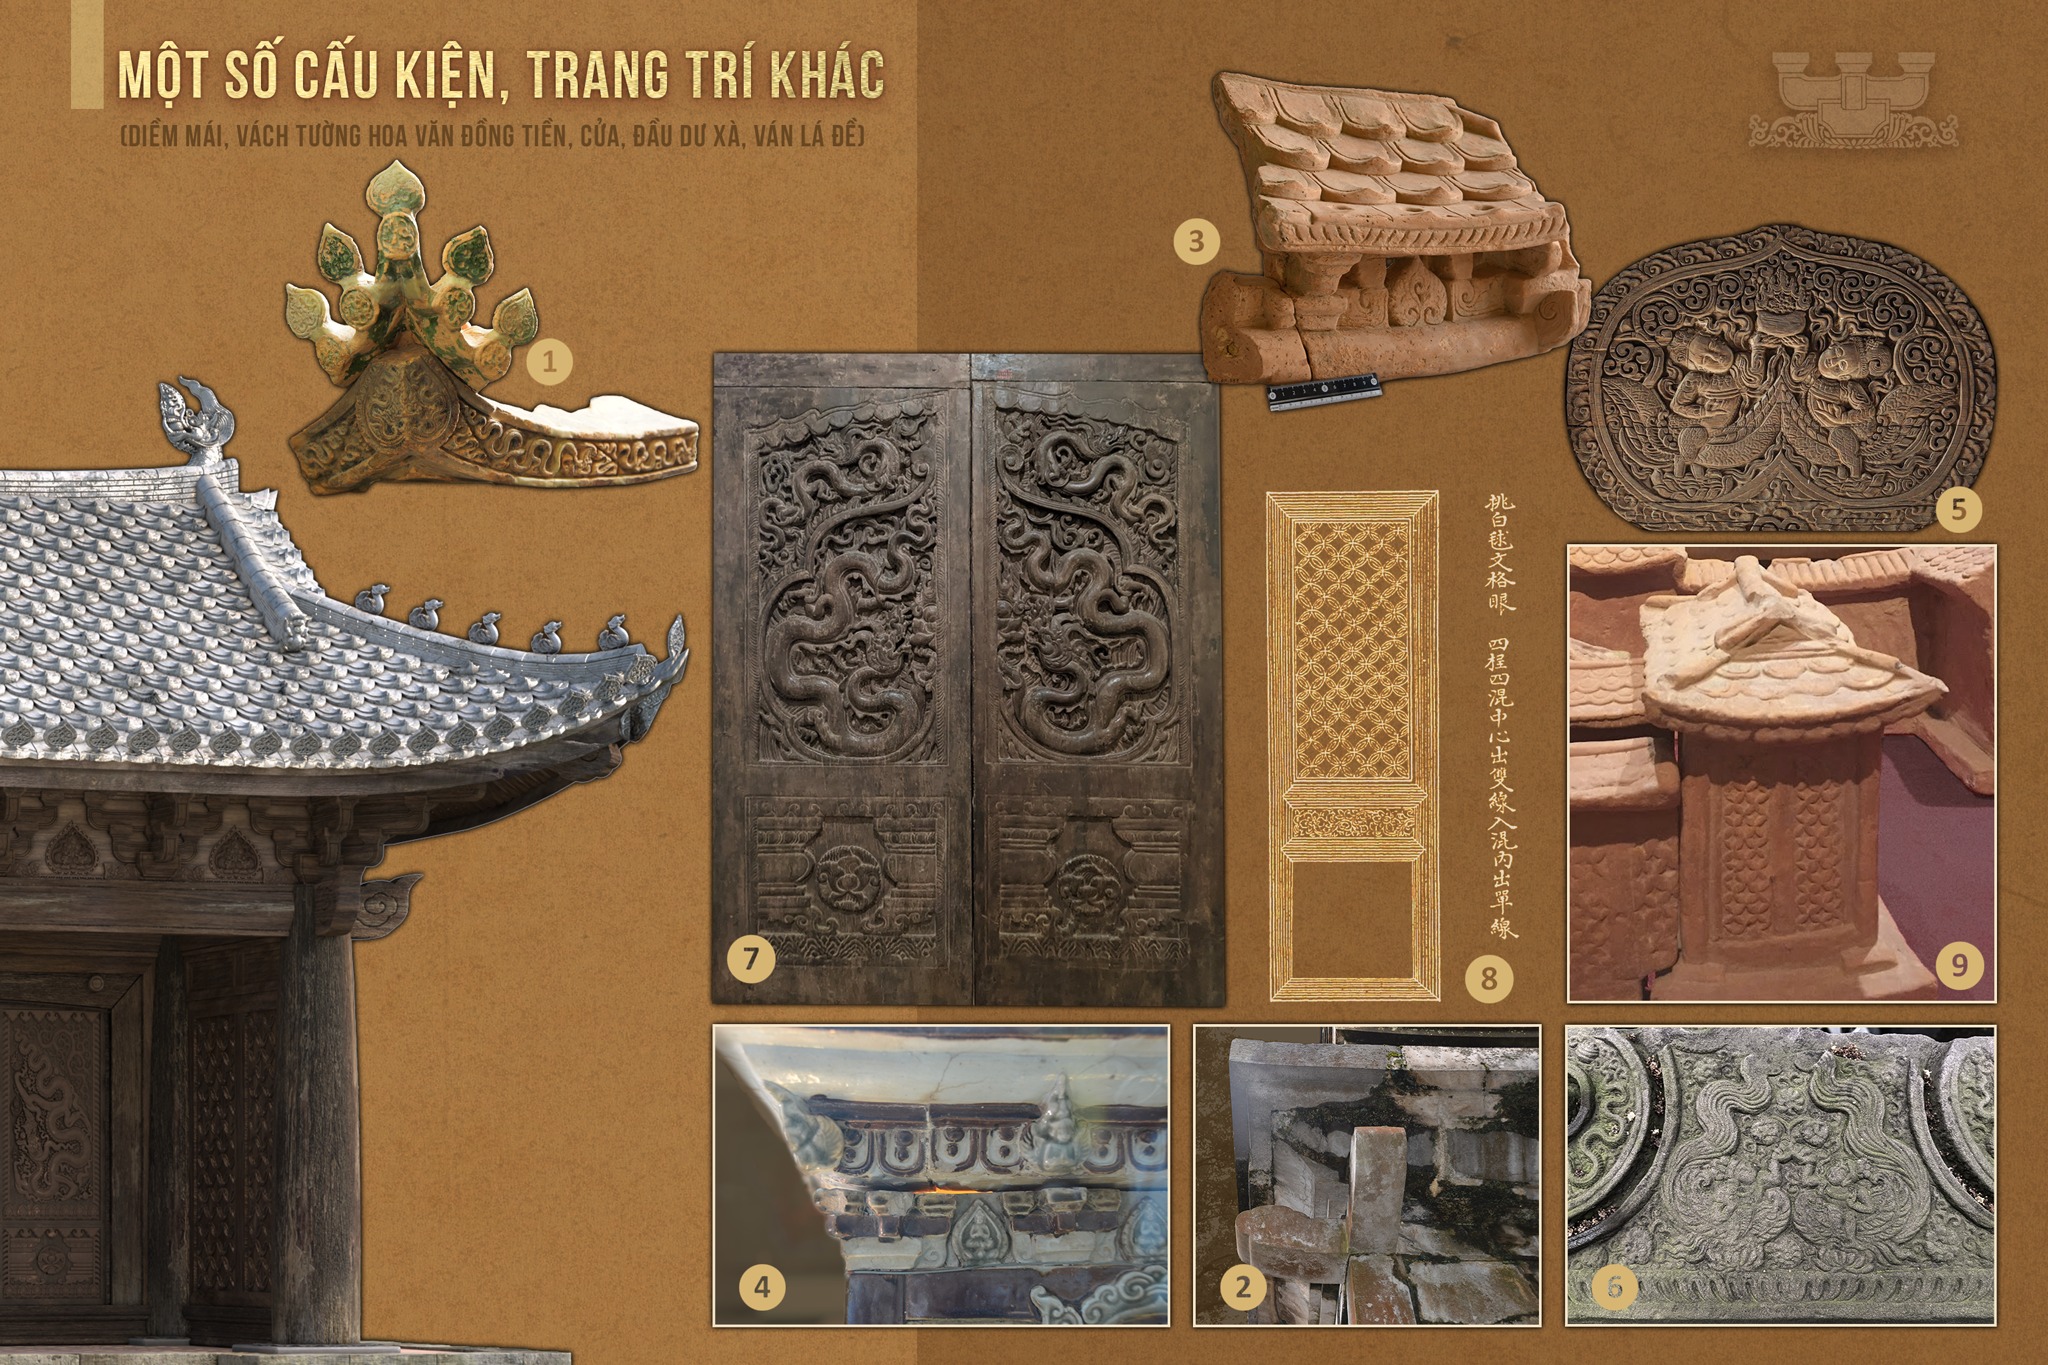 Một số cấu kiện kiến trúc gỗ thời Trần - Lão Cổ Vật